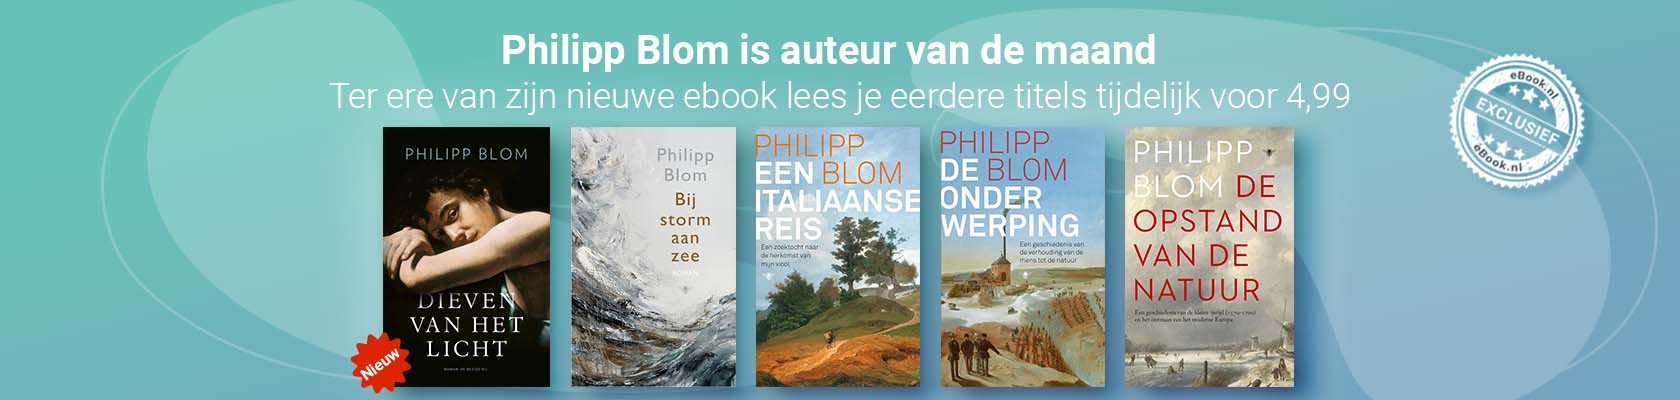 Auteur van de maand: Philipp Blom